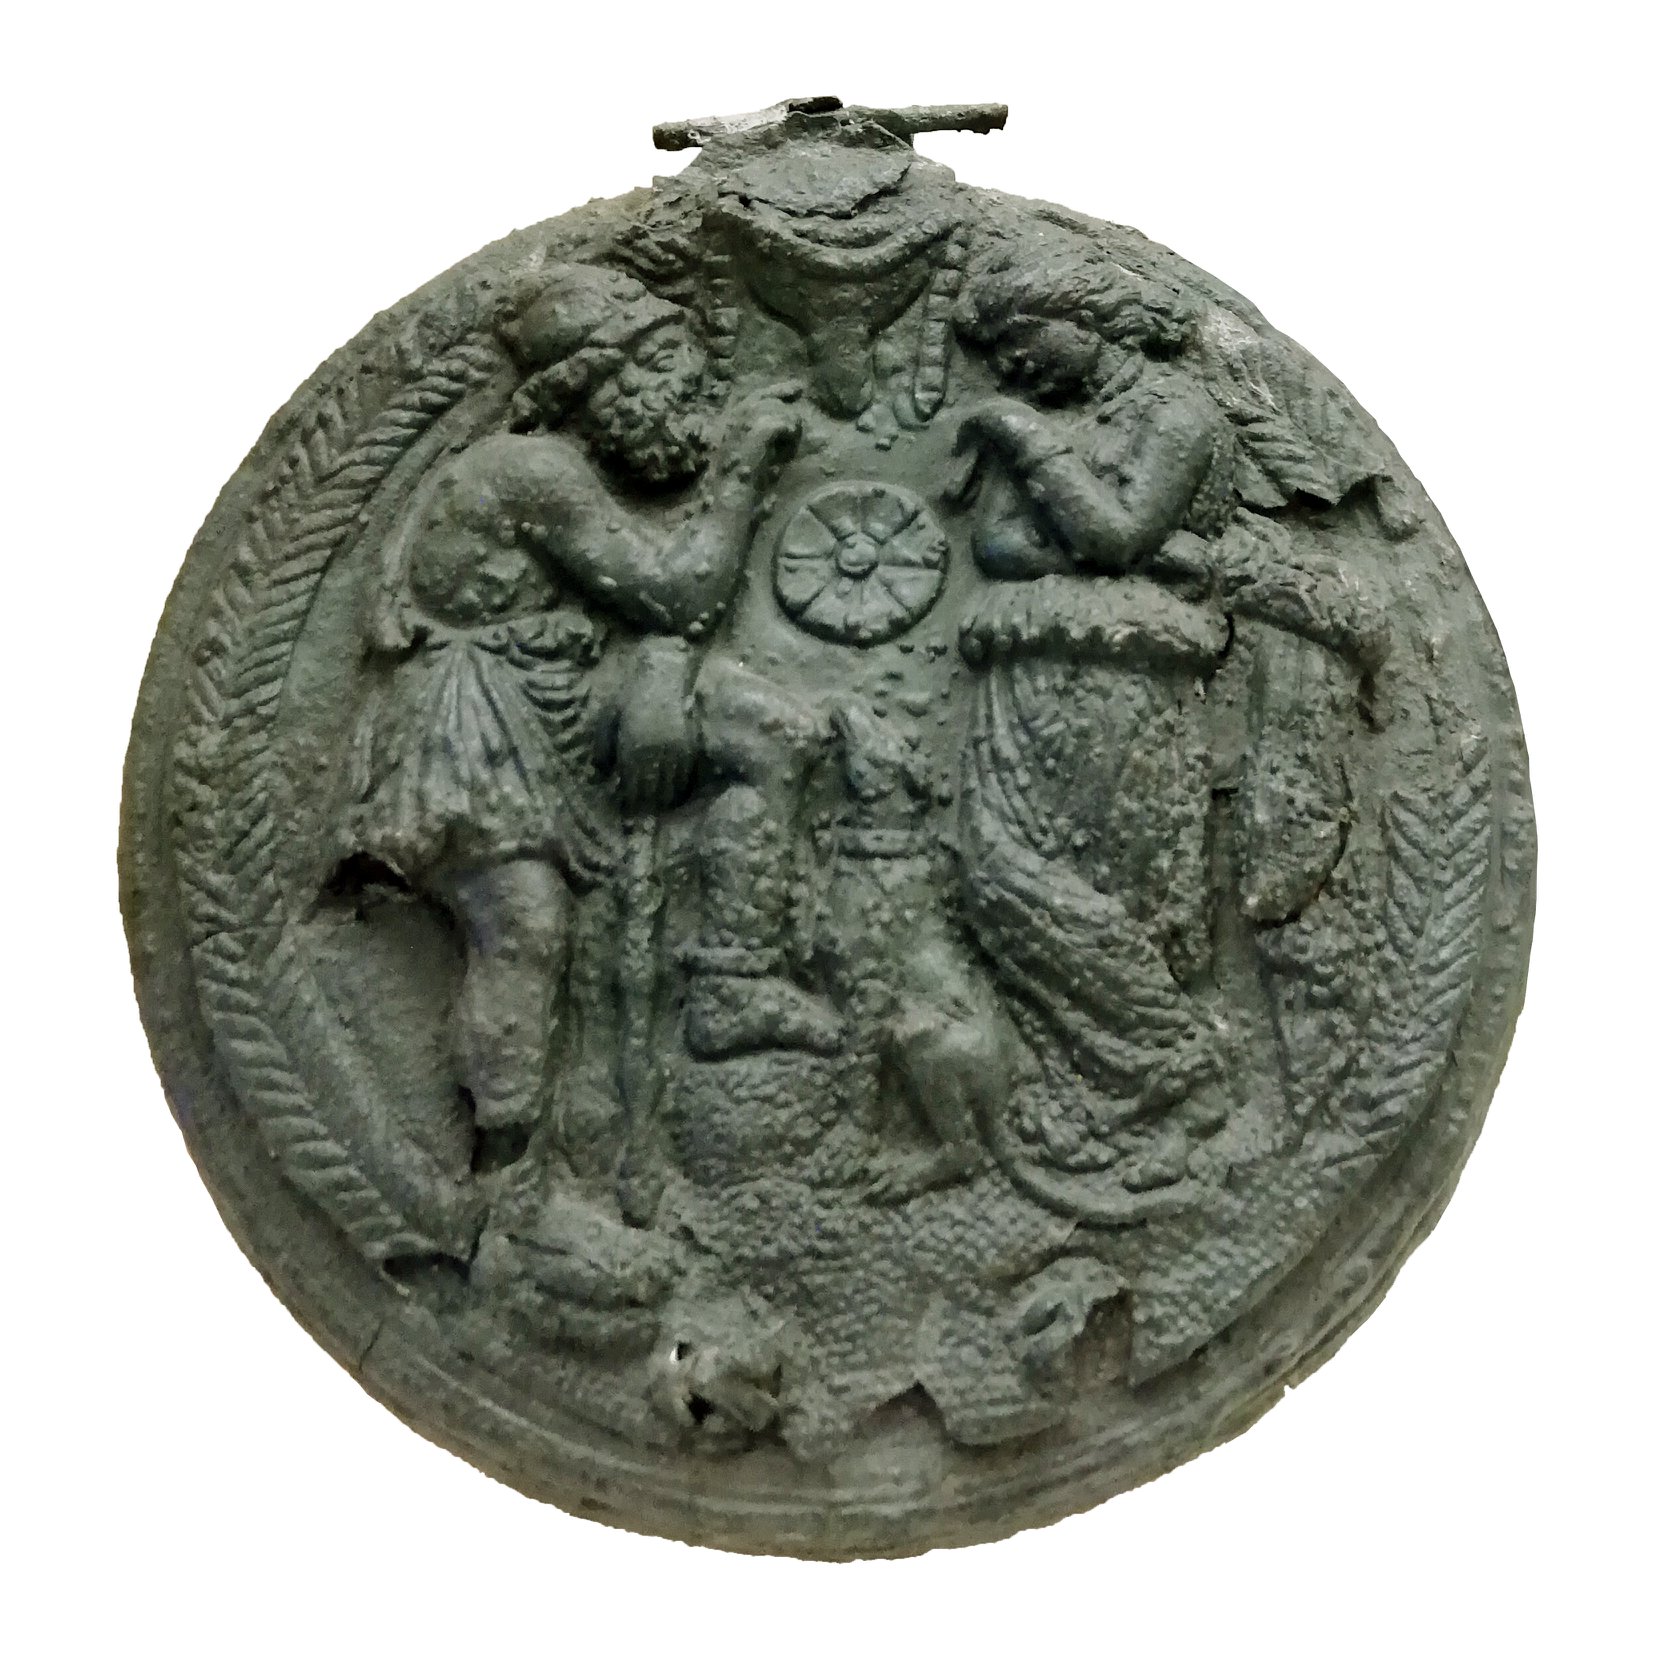 Teca di specchio in bronzo con Ulisse e Penelope, Collezione Castellani, da Tarquina, III  sec. a. C.